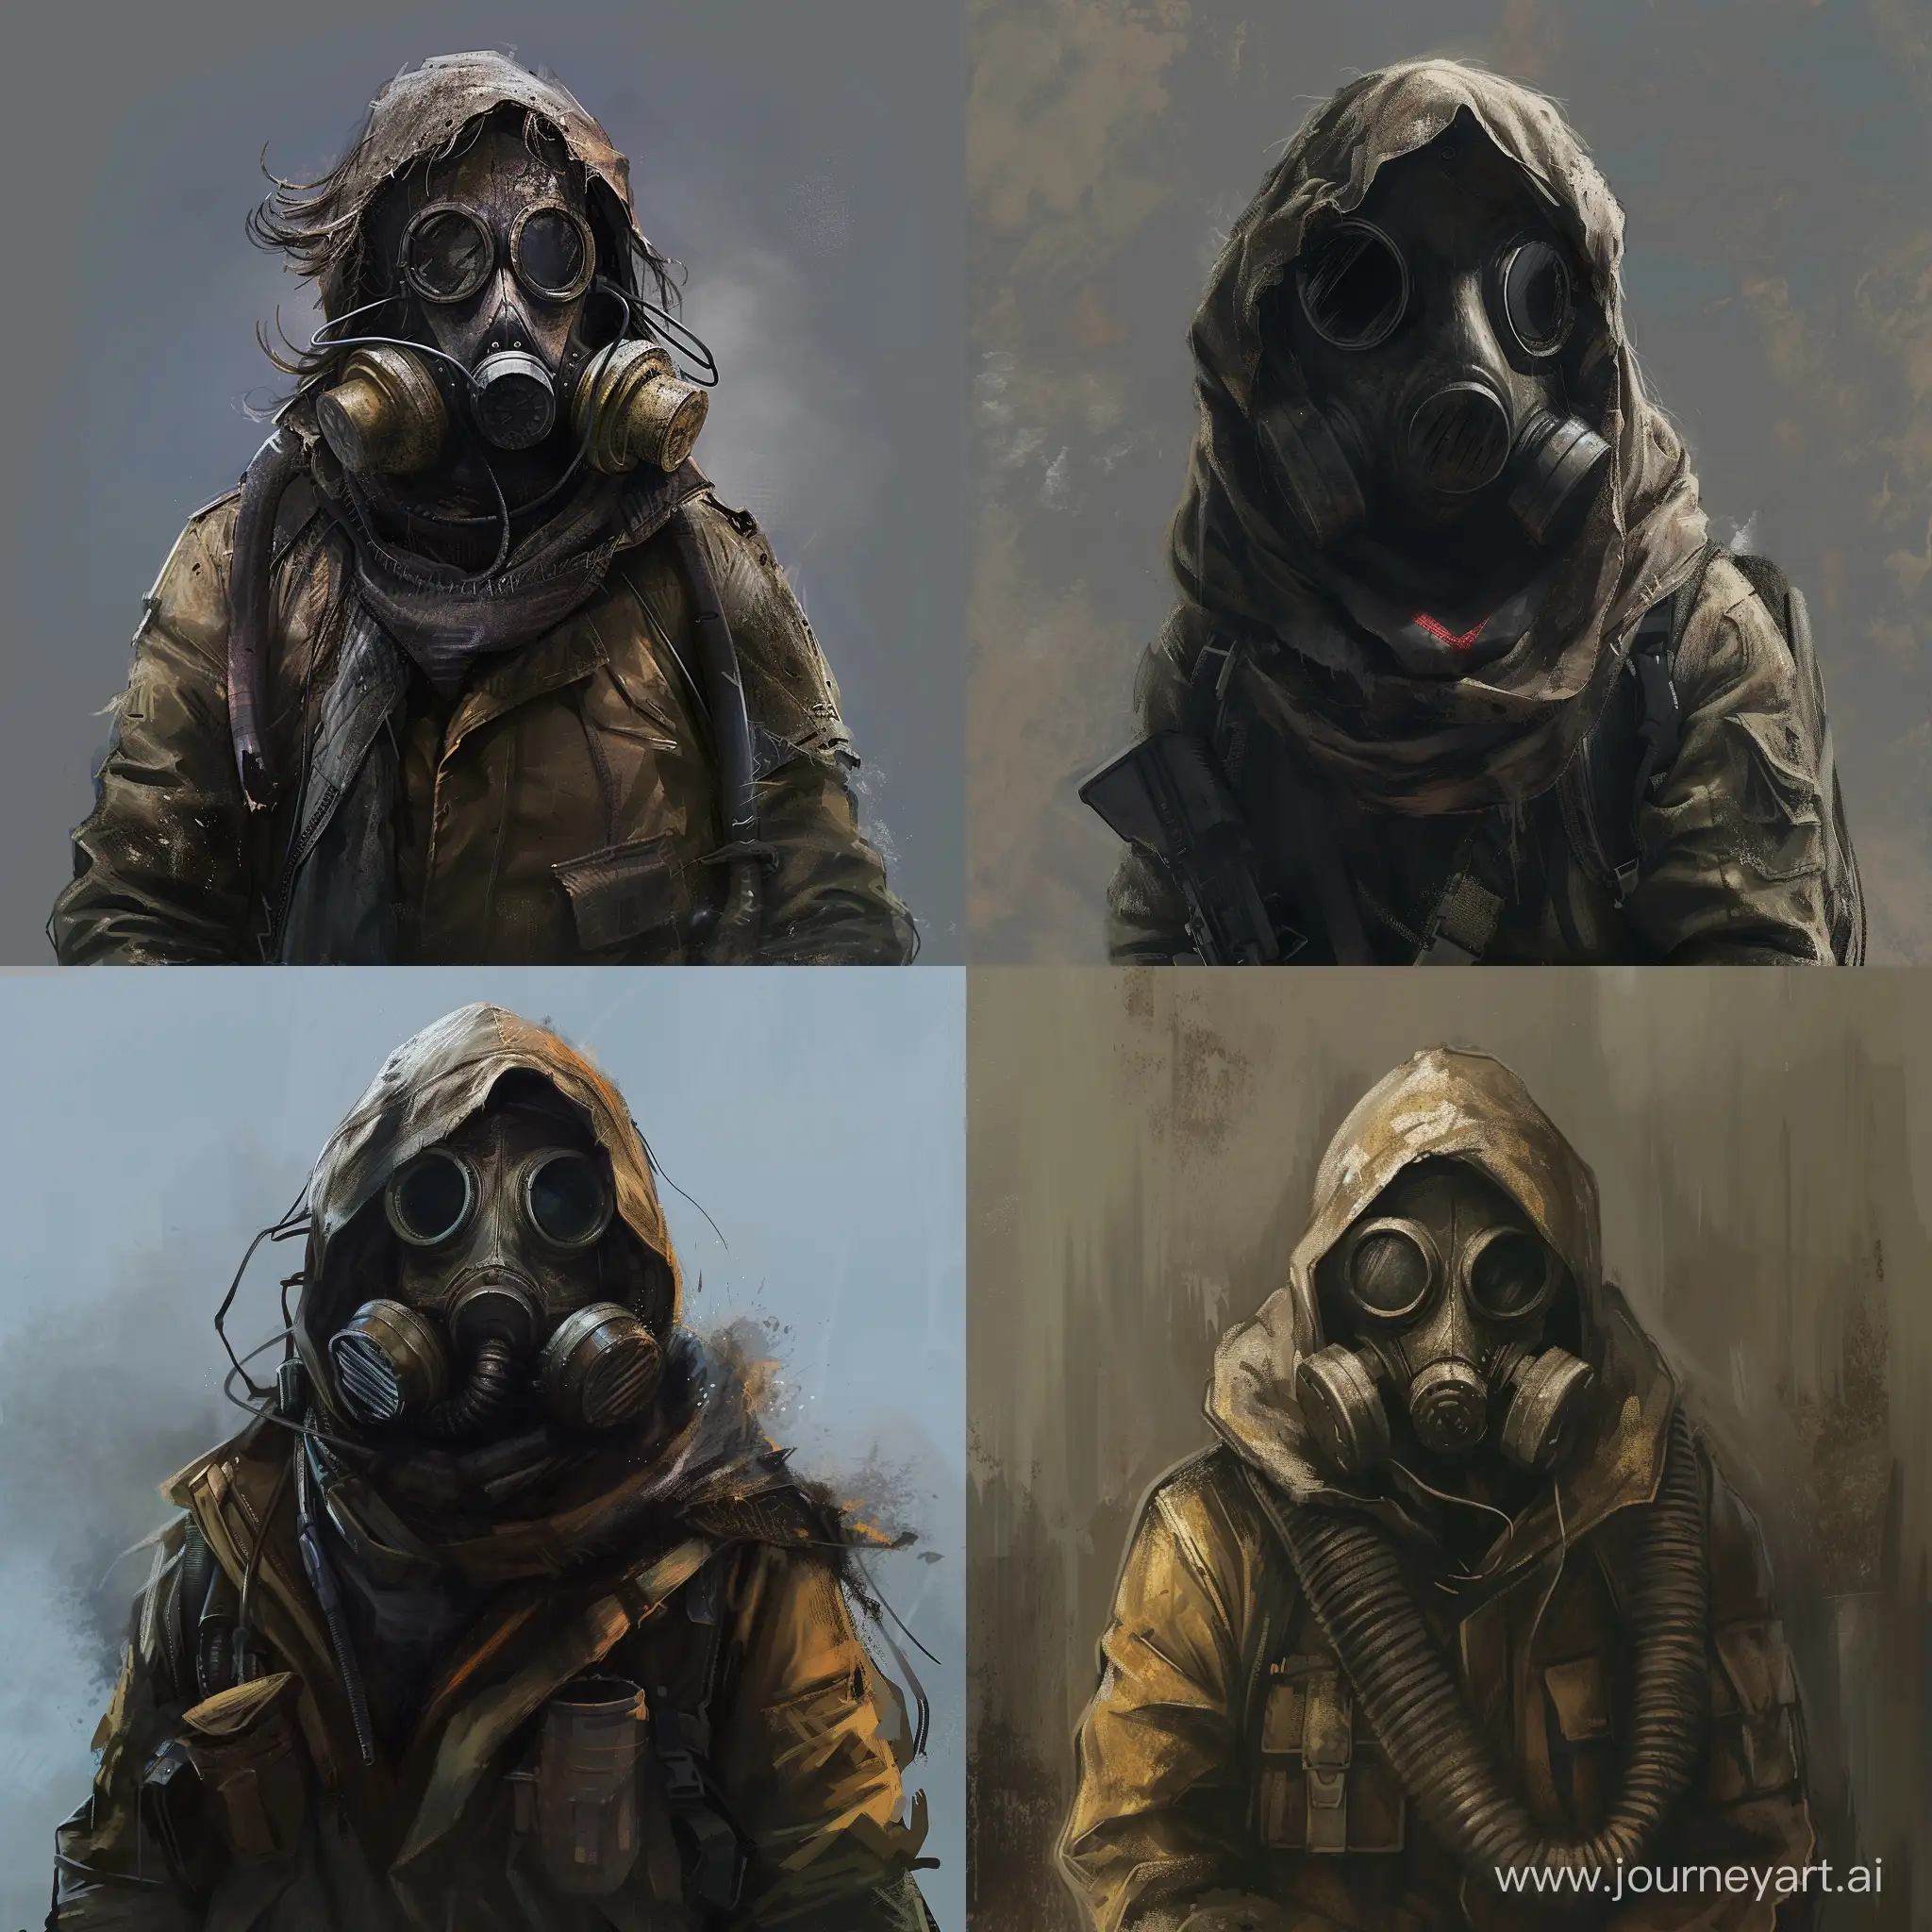 PostApocalyptic-Survivor-in-Gas-Mask-Stalker-Games-Concept-Art